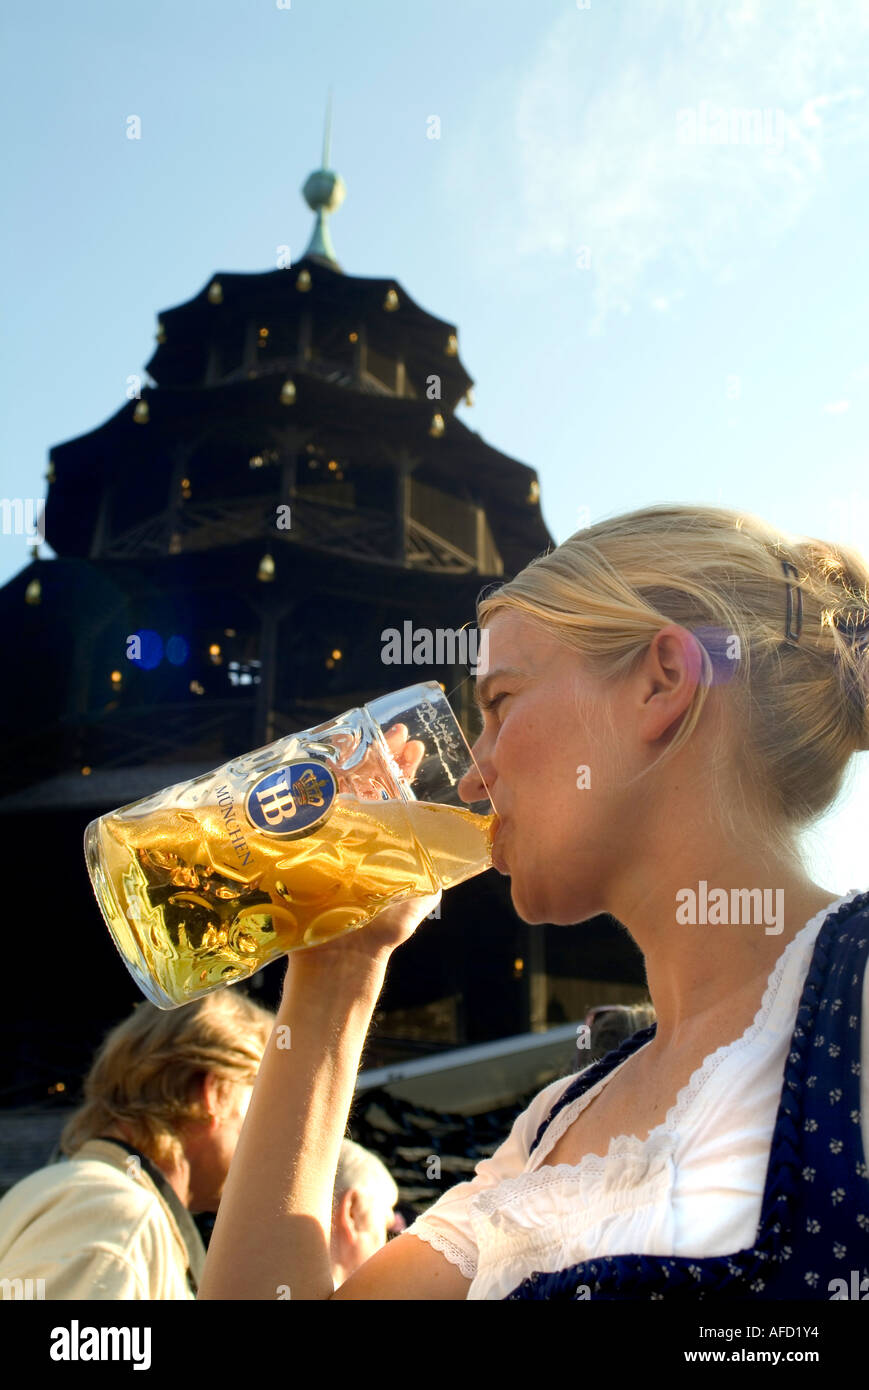 Girl in Dirndl dress drinking beer in beergarden, Chinesischer Turm, English Garden, Munich, Bavaria, Germany Stock Photo